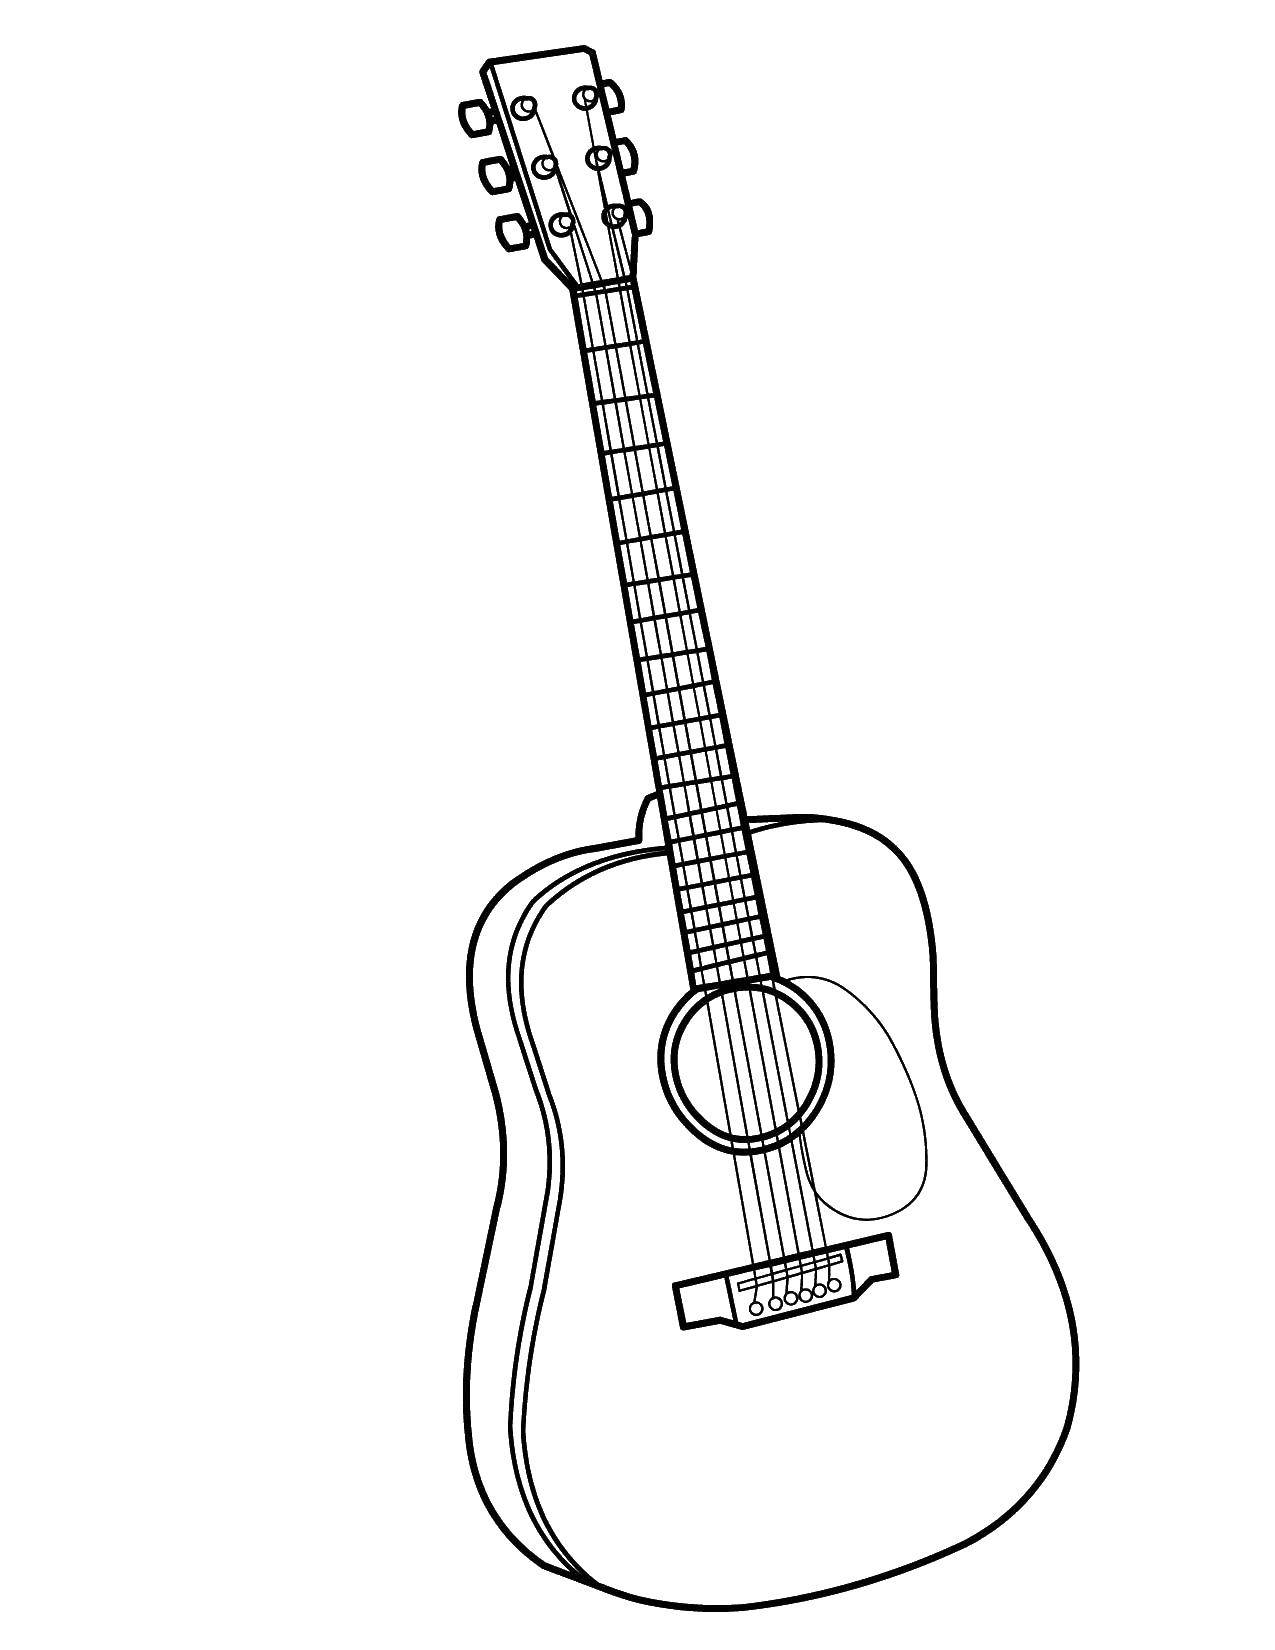 Название: Раскраска Гитара. Категория: Музыка. Теги: Музыка, инструмент, музыкант, ноты.